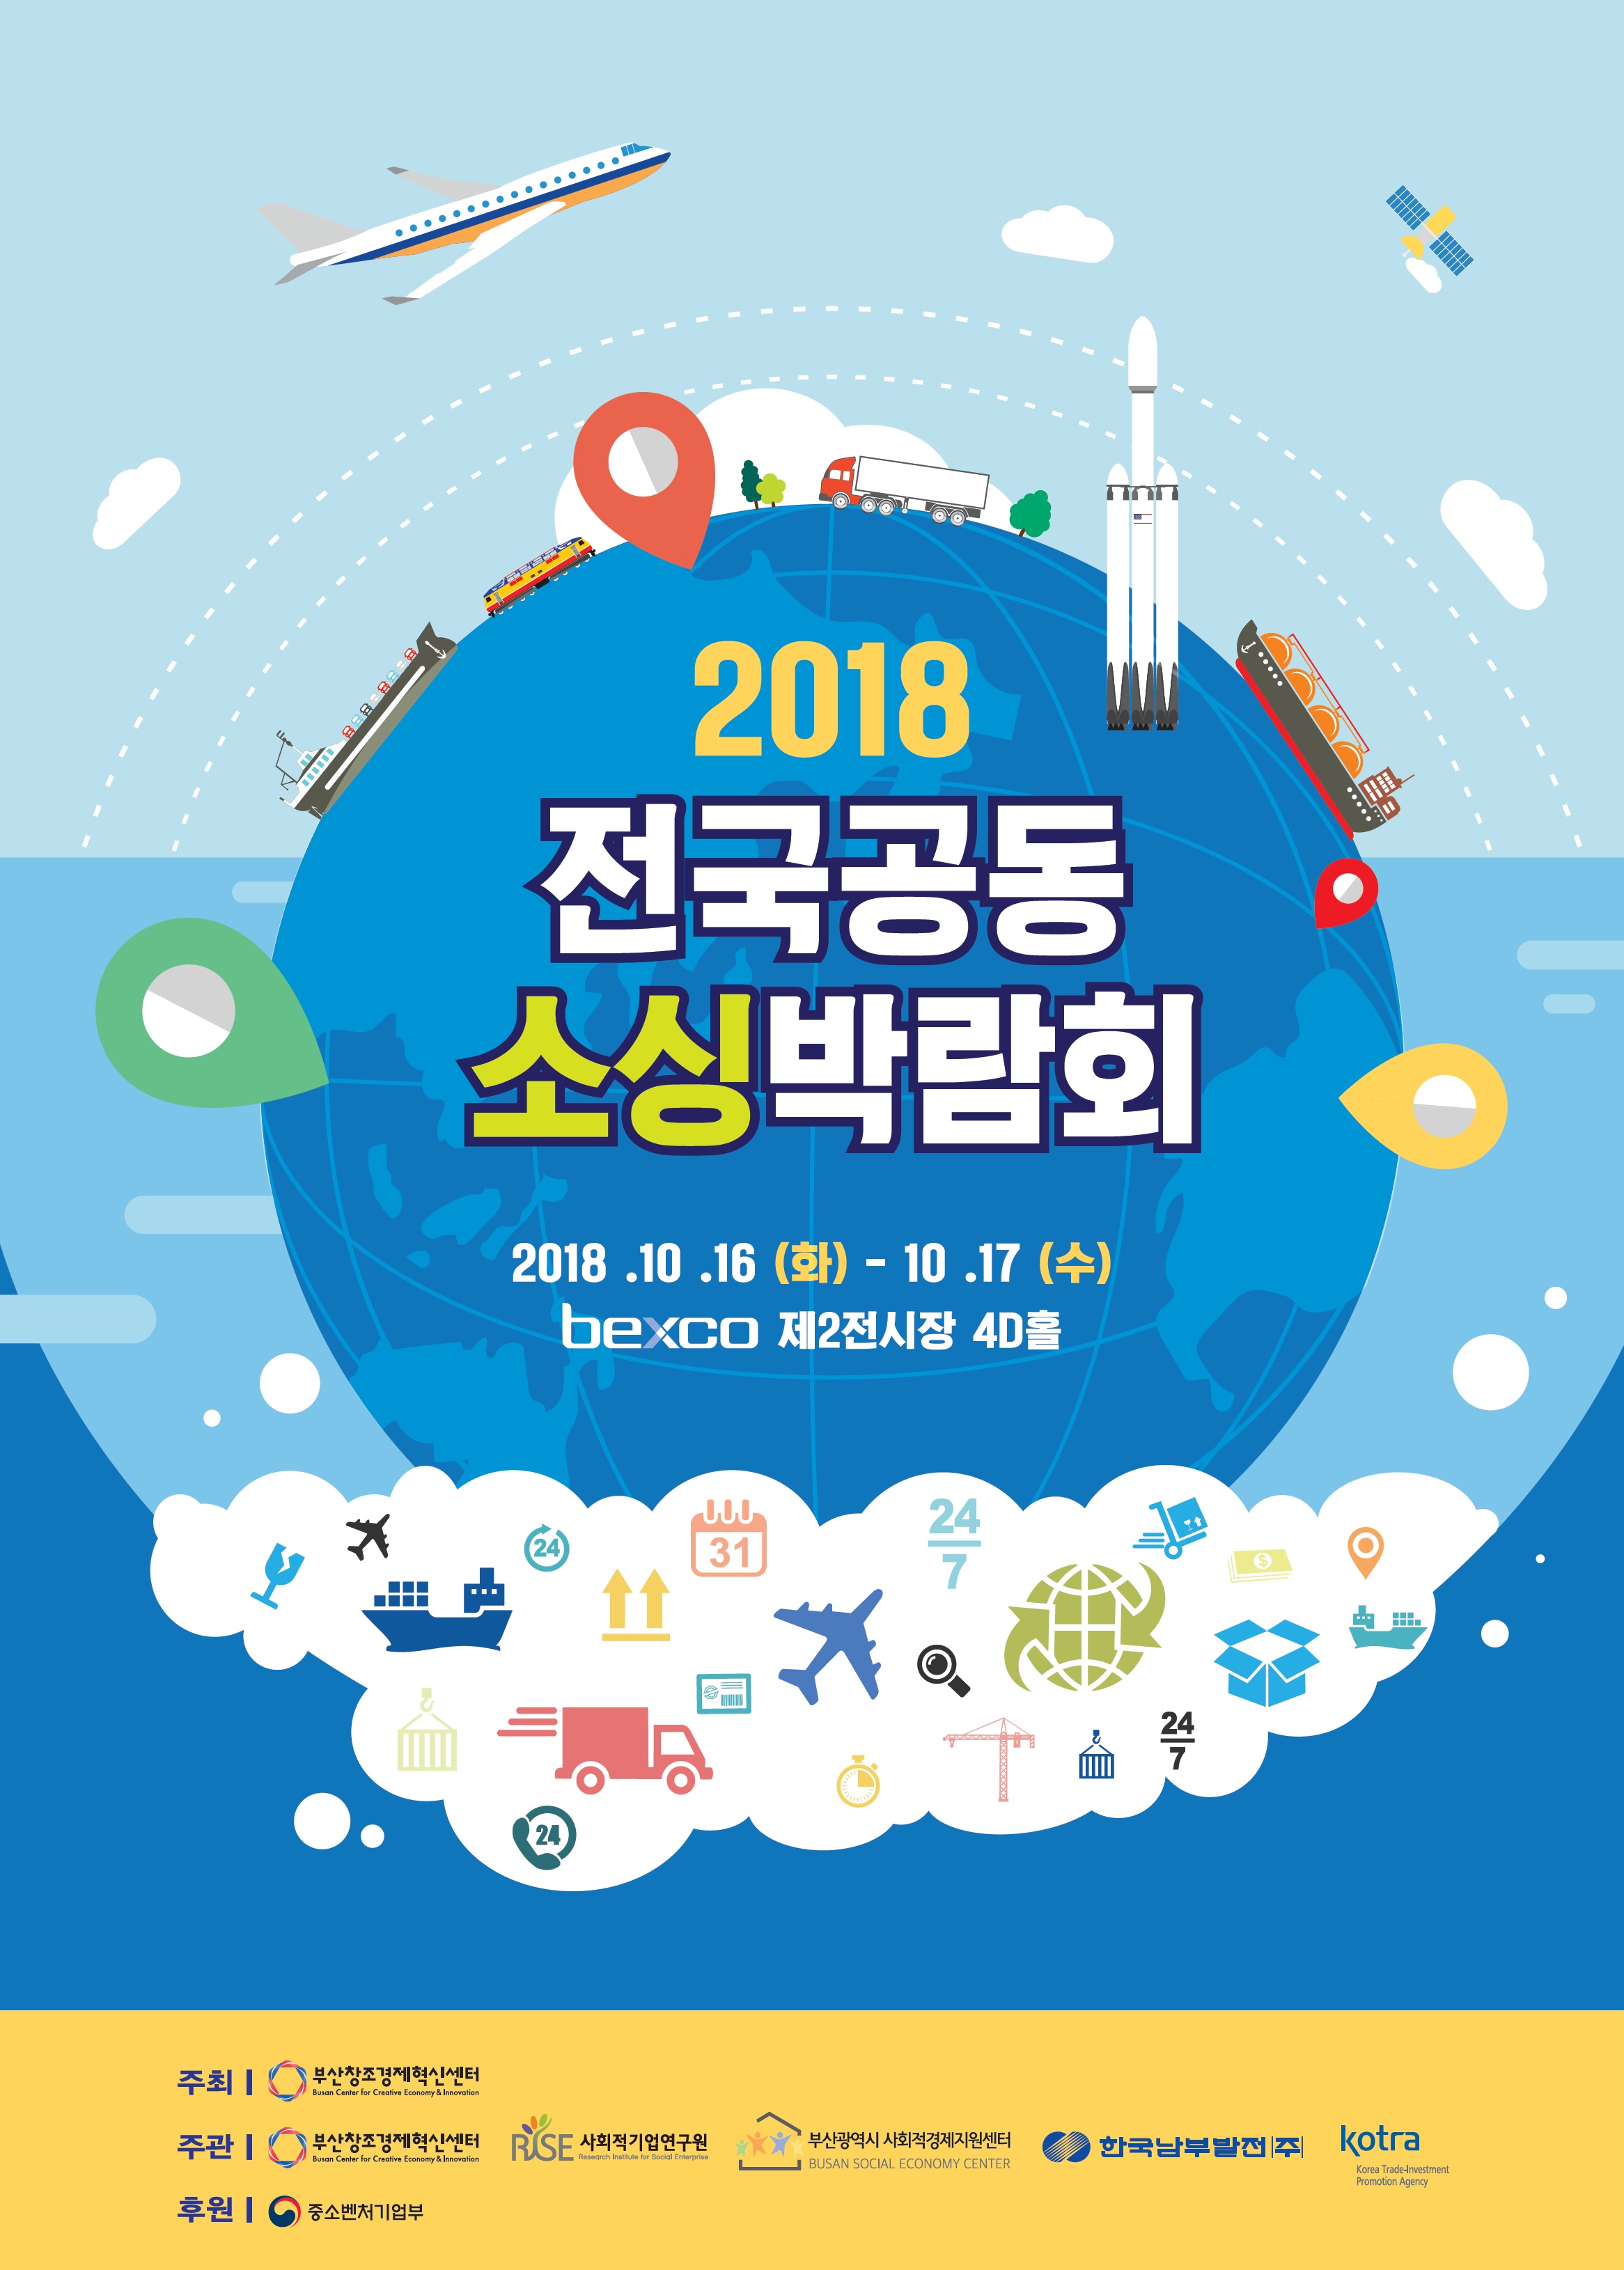 사회적 경제와 중소벤처기업 활성화 위한 ‘2018 전국 공동 소싱박람회’ 개최